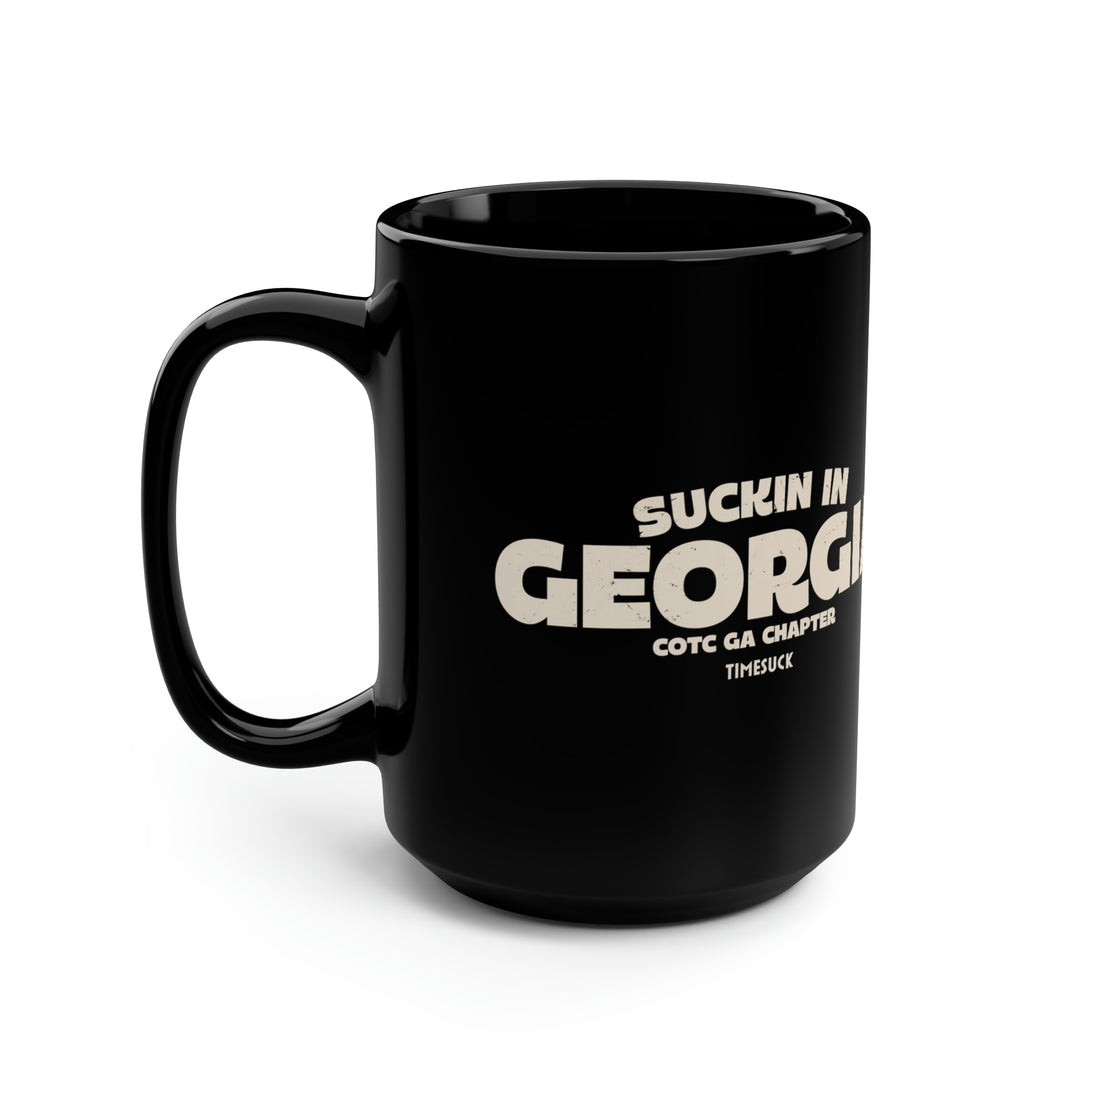 Georgia Cult Mug